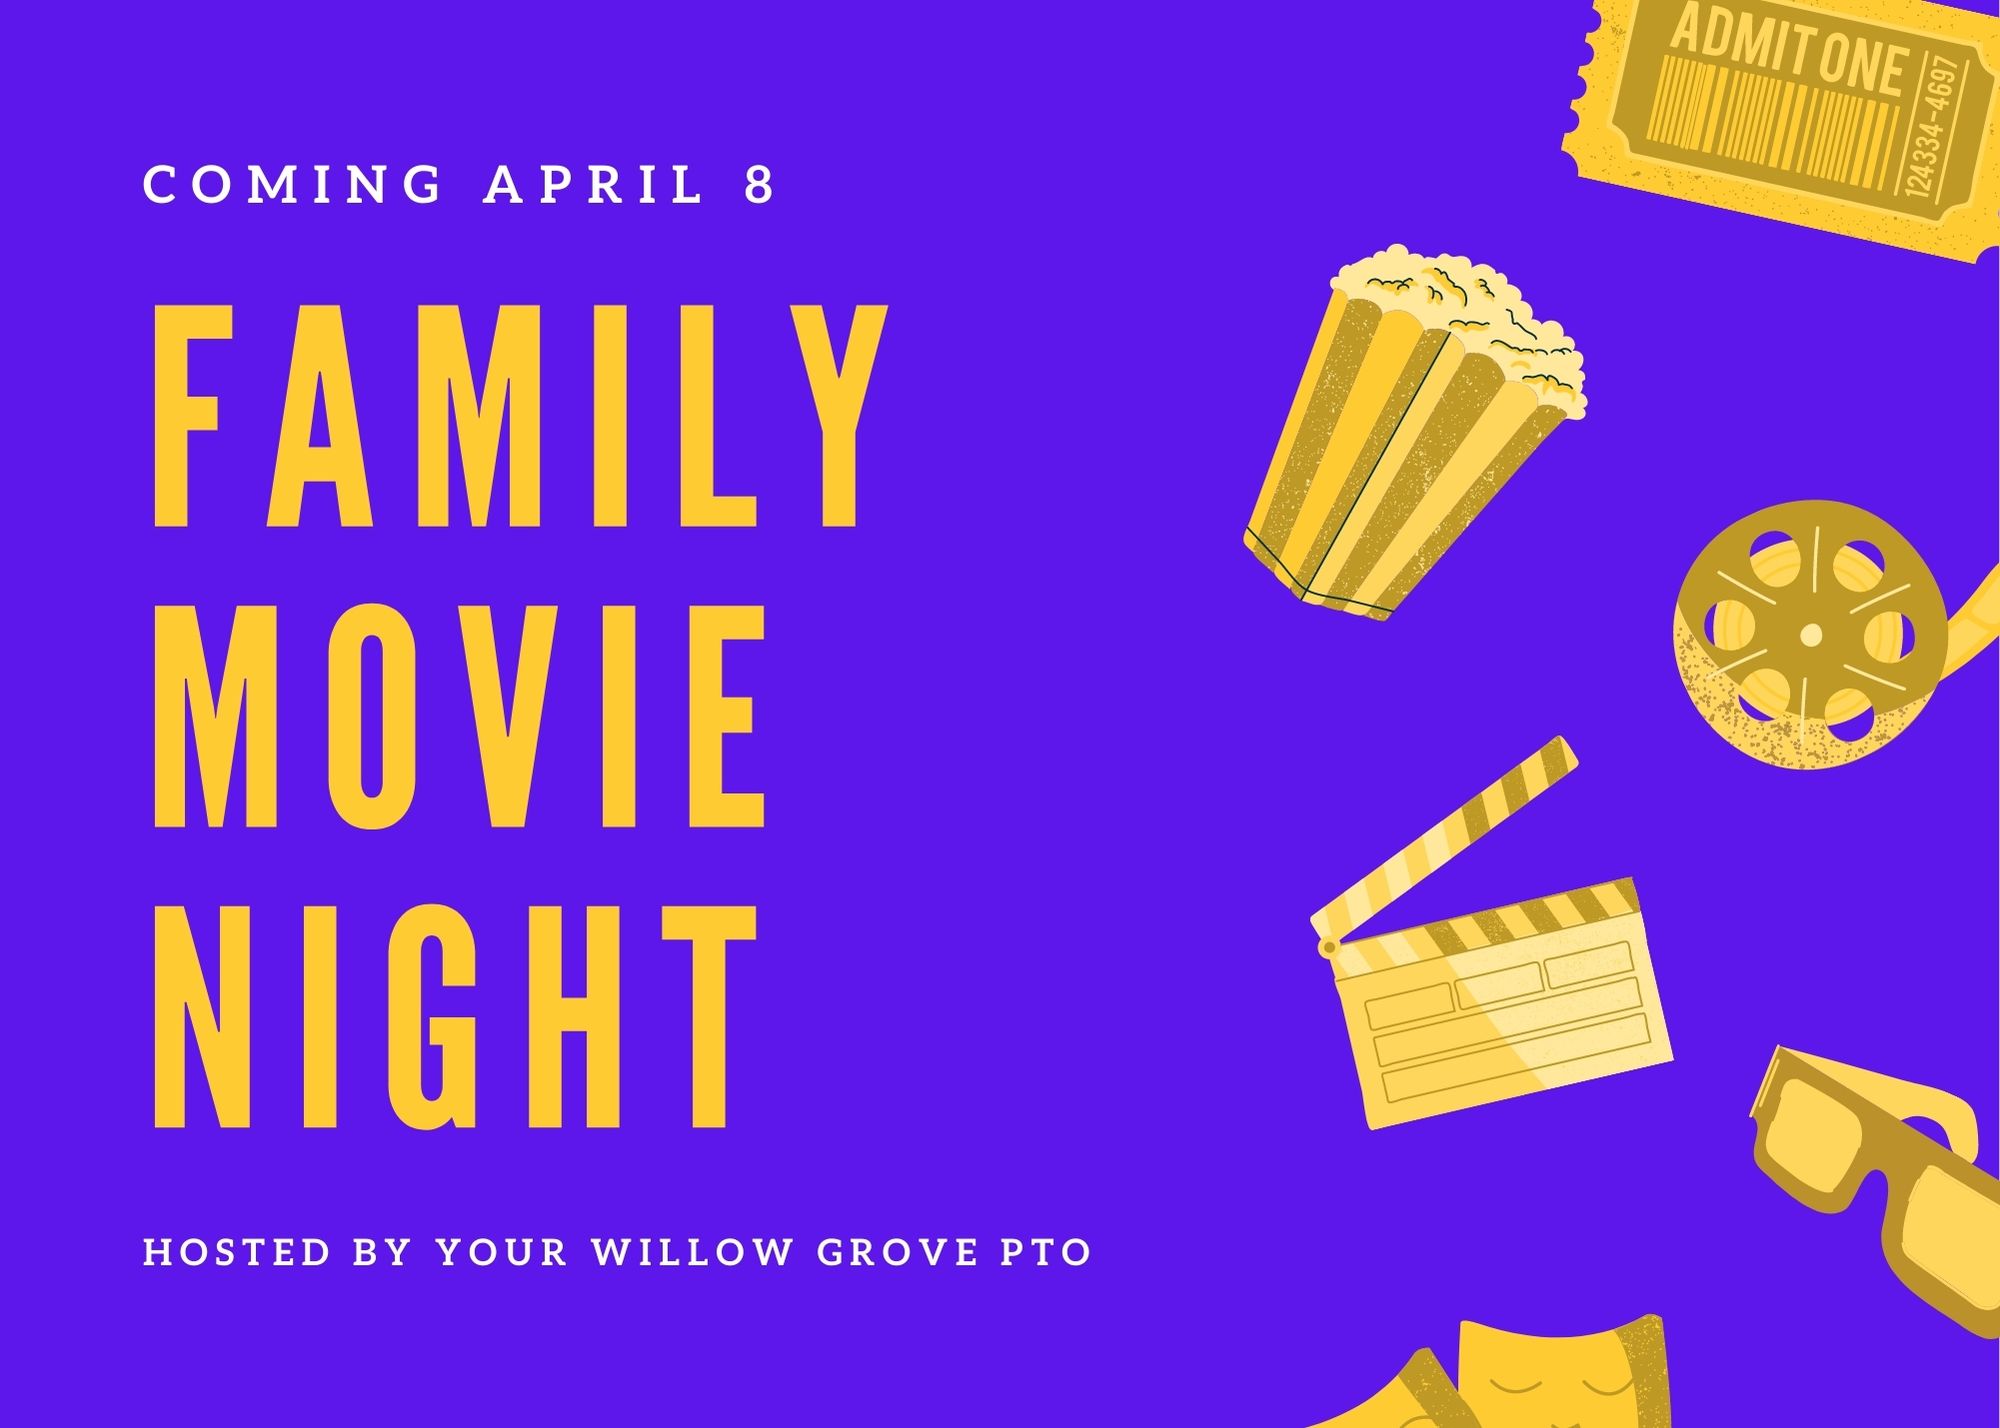 Willow Grove Movie Night: April 8, 2022